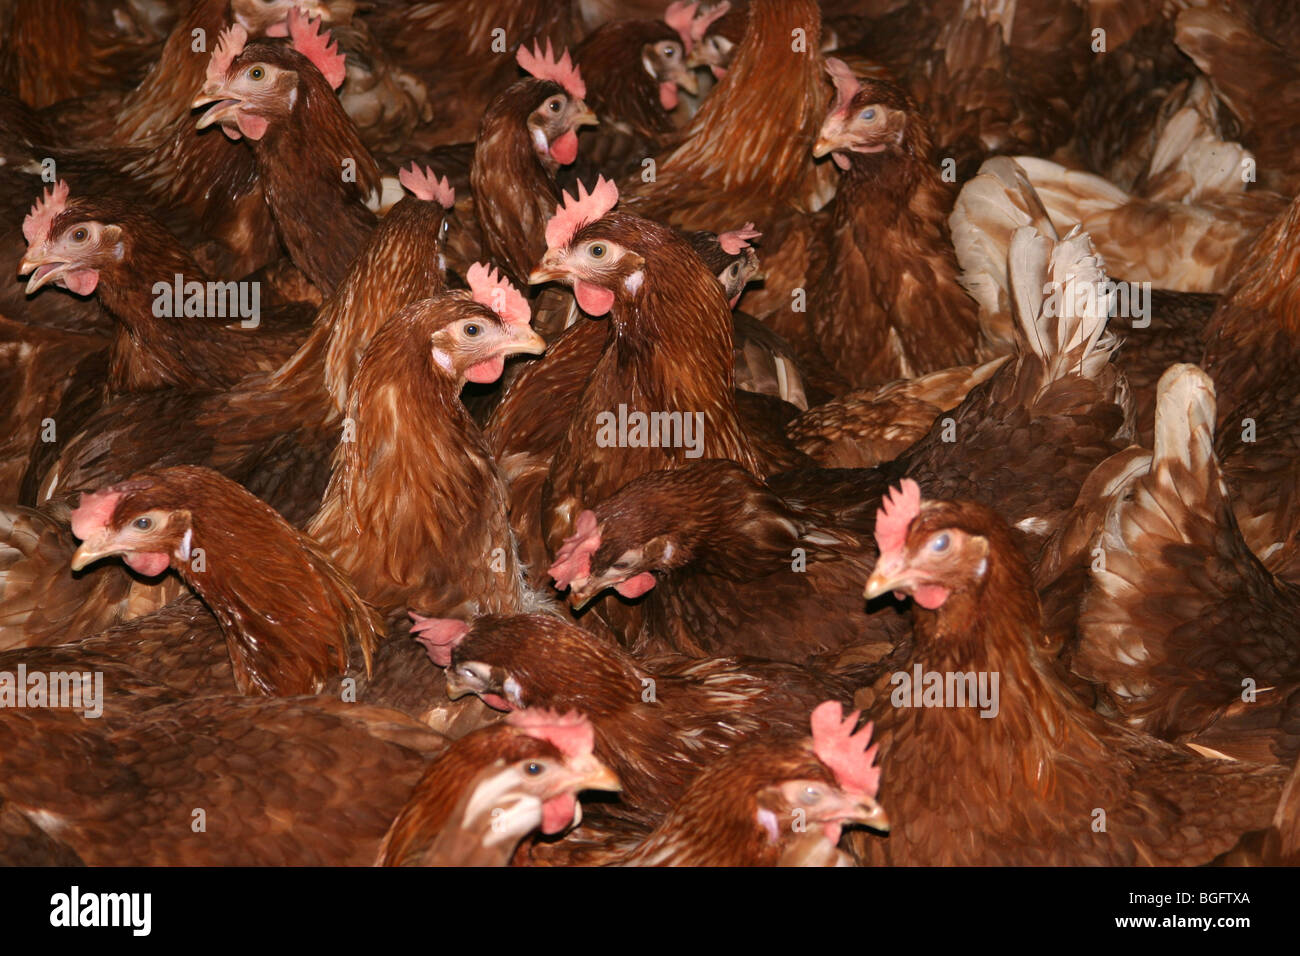 Barn Kept Hens For Egg Production Stock Photo